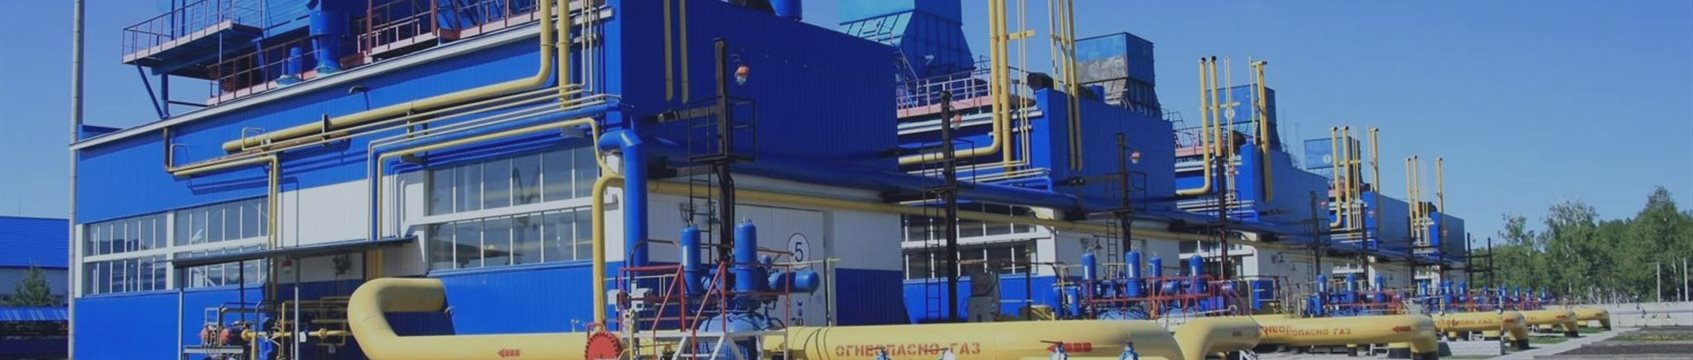 Акции «Газпрома» растут после решения о дивидендах